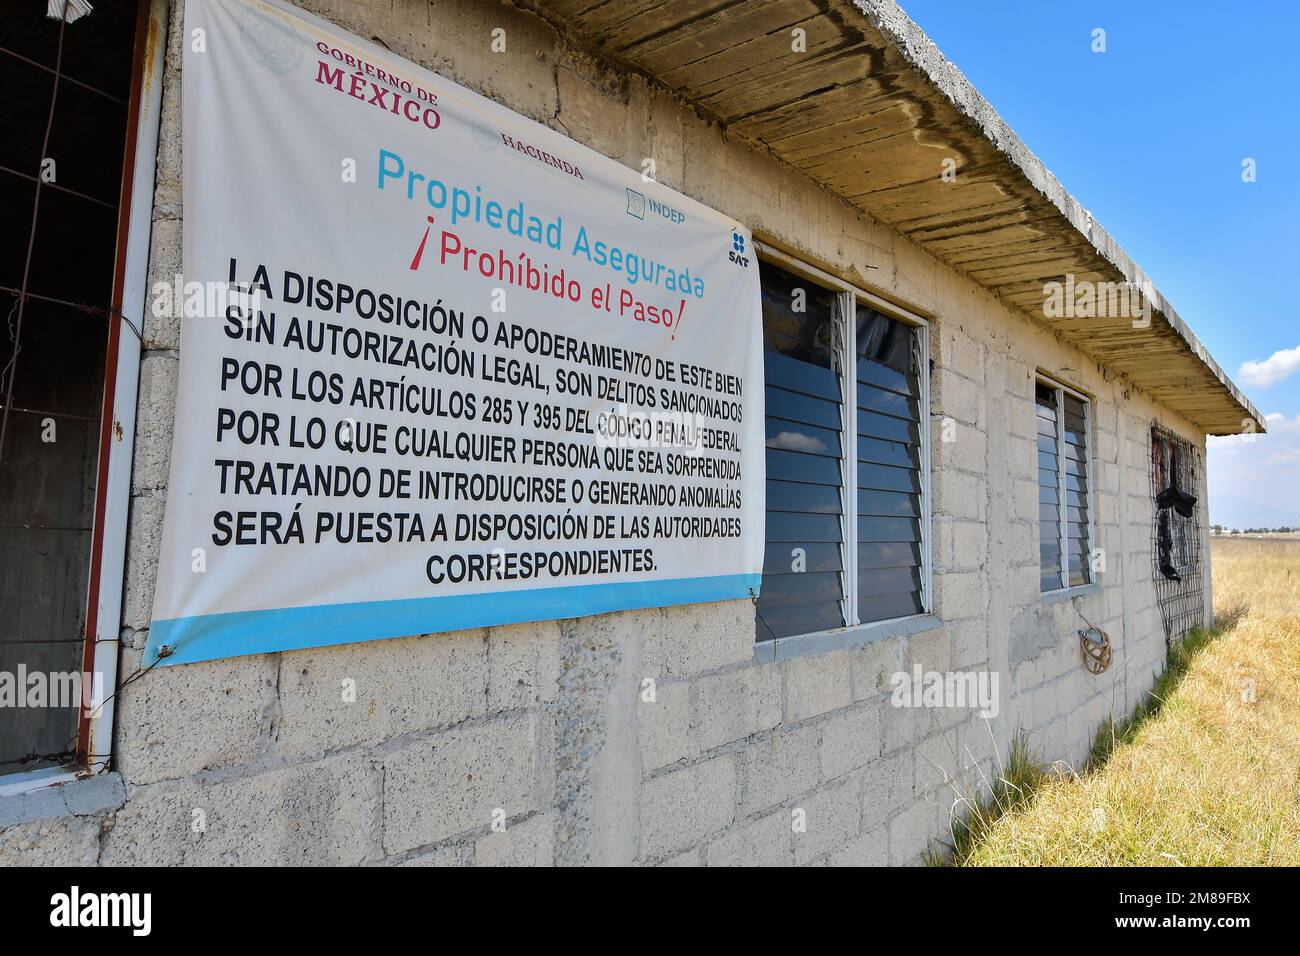 Non exclusif: 12 janvier à Almomoya de Juárez, Mexique : aspects de la maison que Joaquín Guzmán Loera 'El Chapo' utilisait il y a près de 8 ans pour s'échapper Banque D'Images